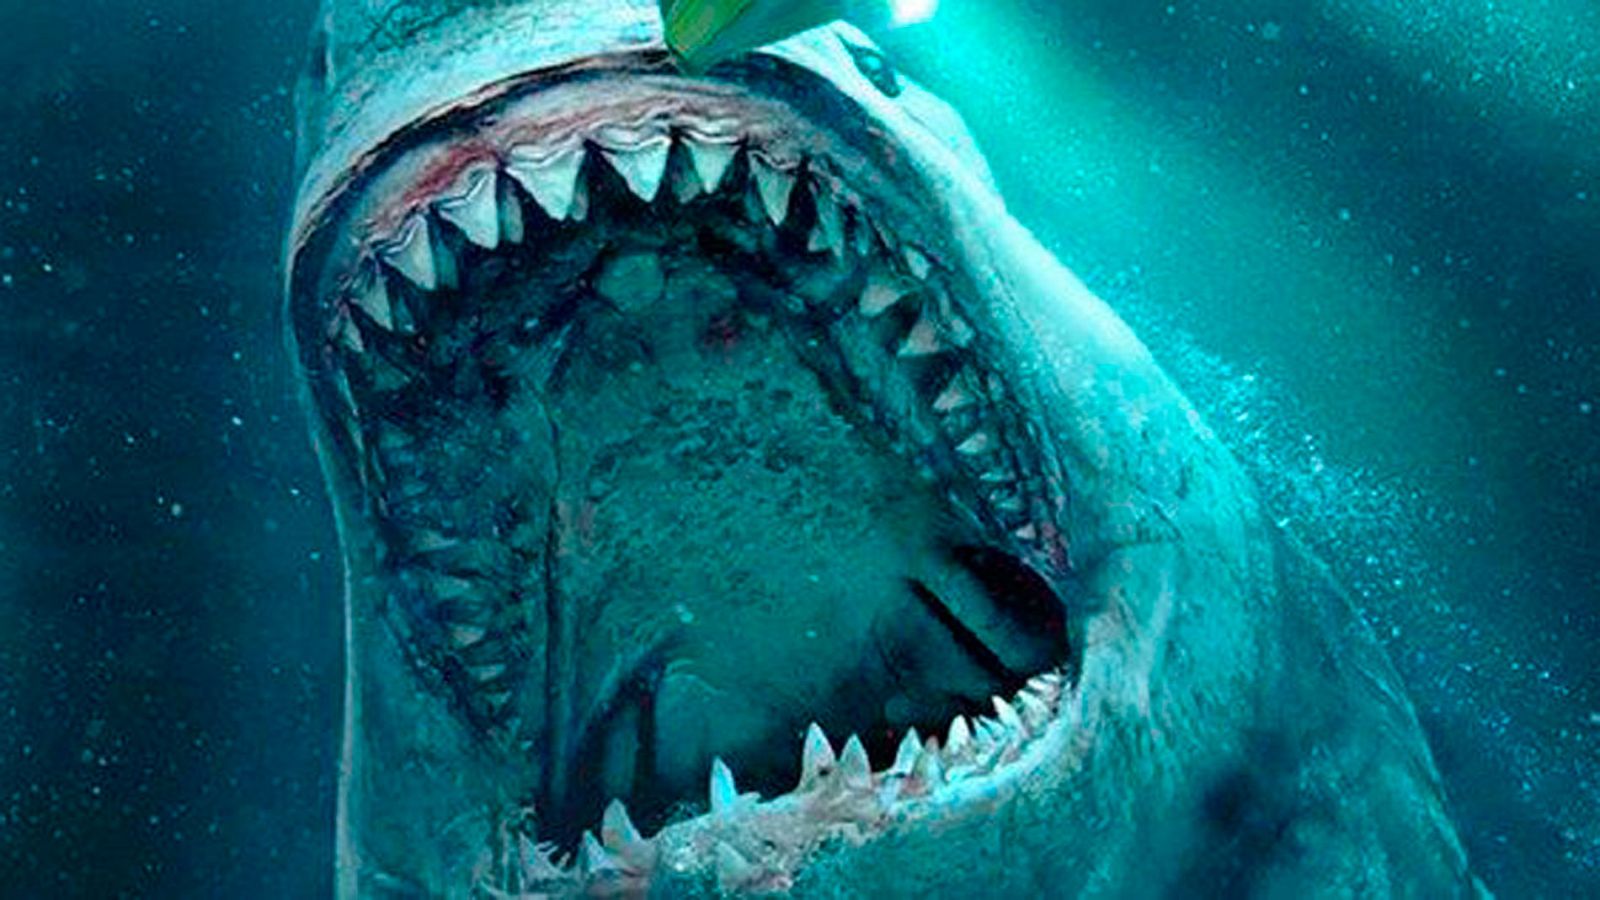 Cine | Megalodón, el tiburón prehistórico gigante que aterroriza en los cines